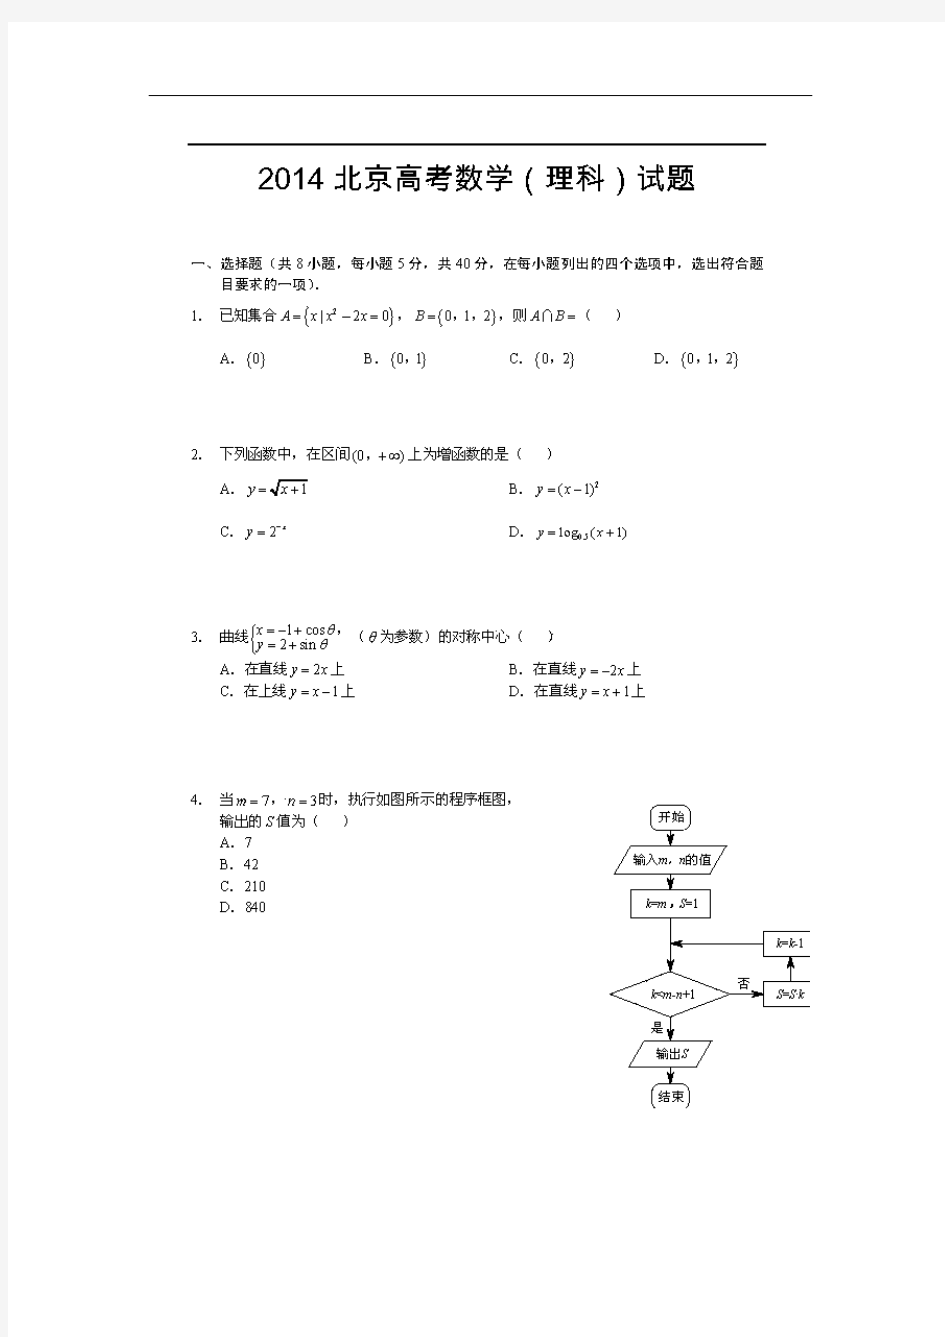 2018年北京高考理科数学试题图片版